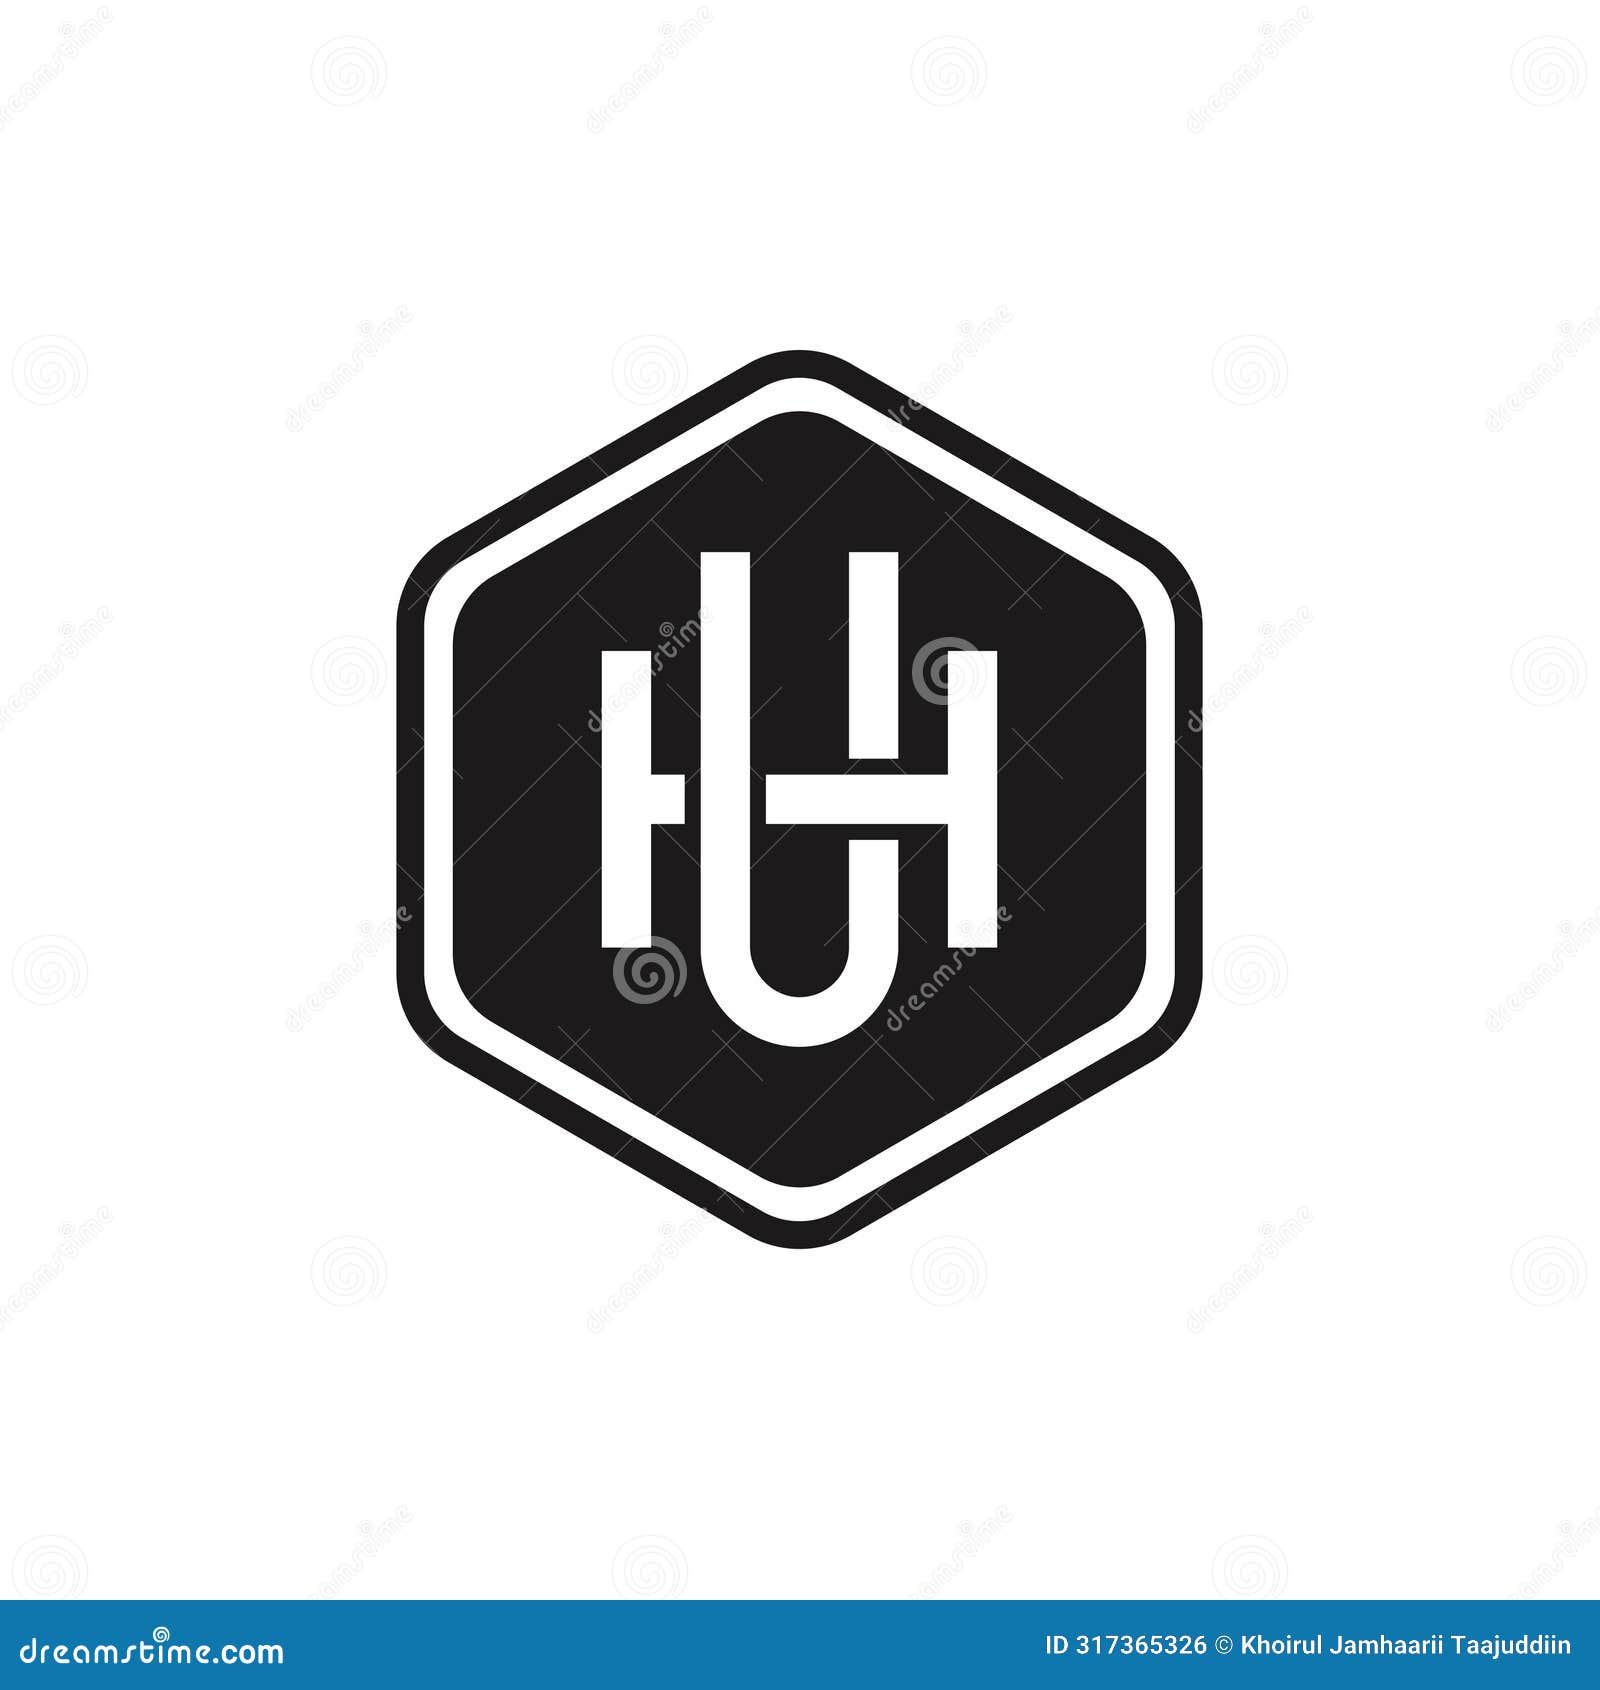 letter uh or hu badge logo